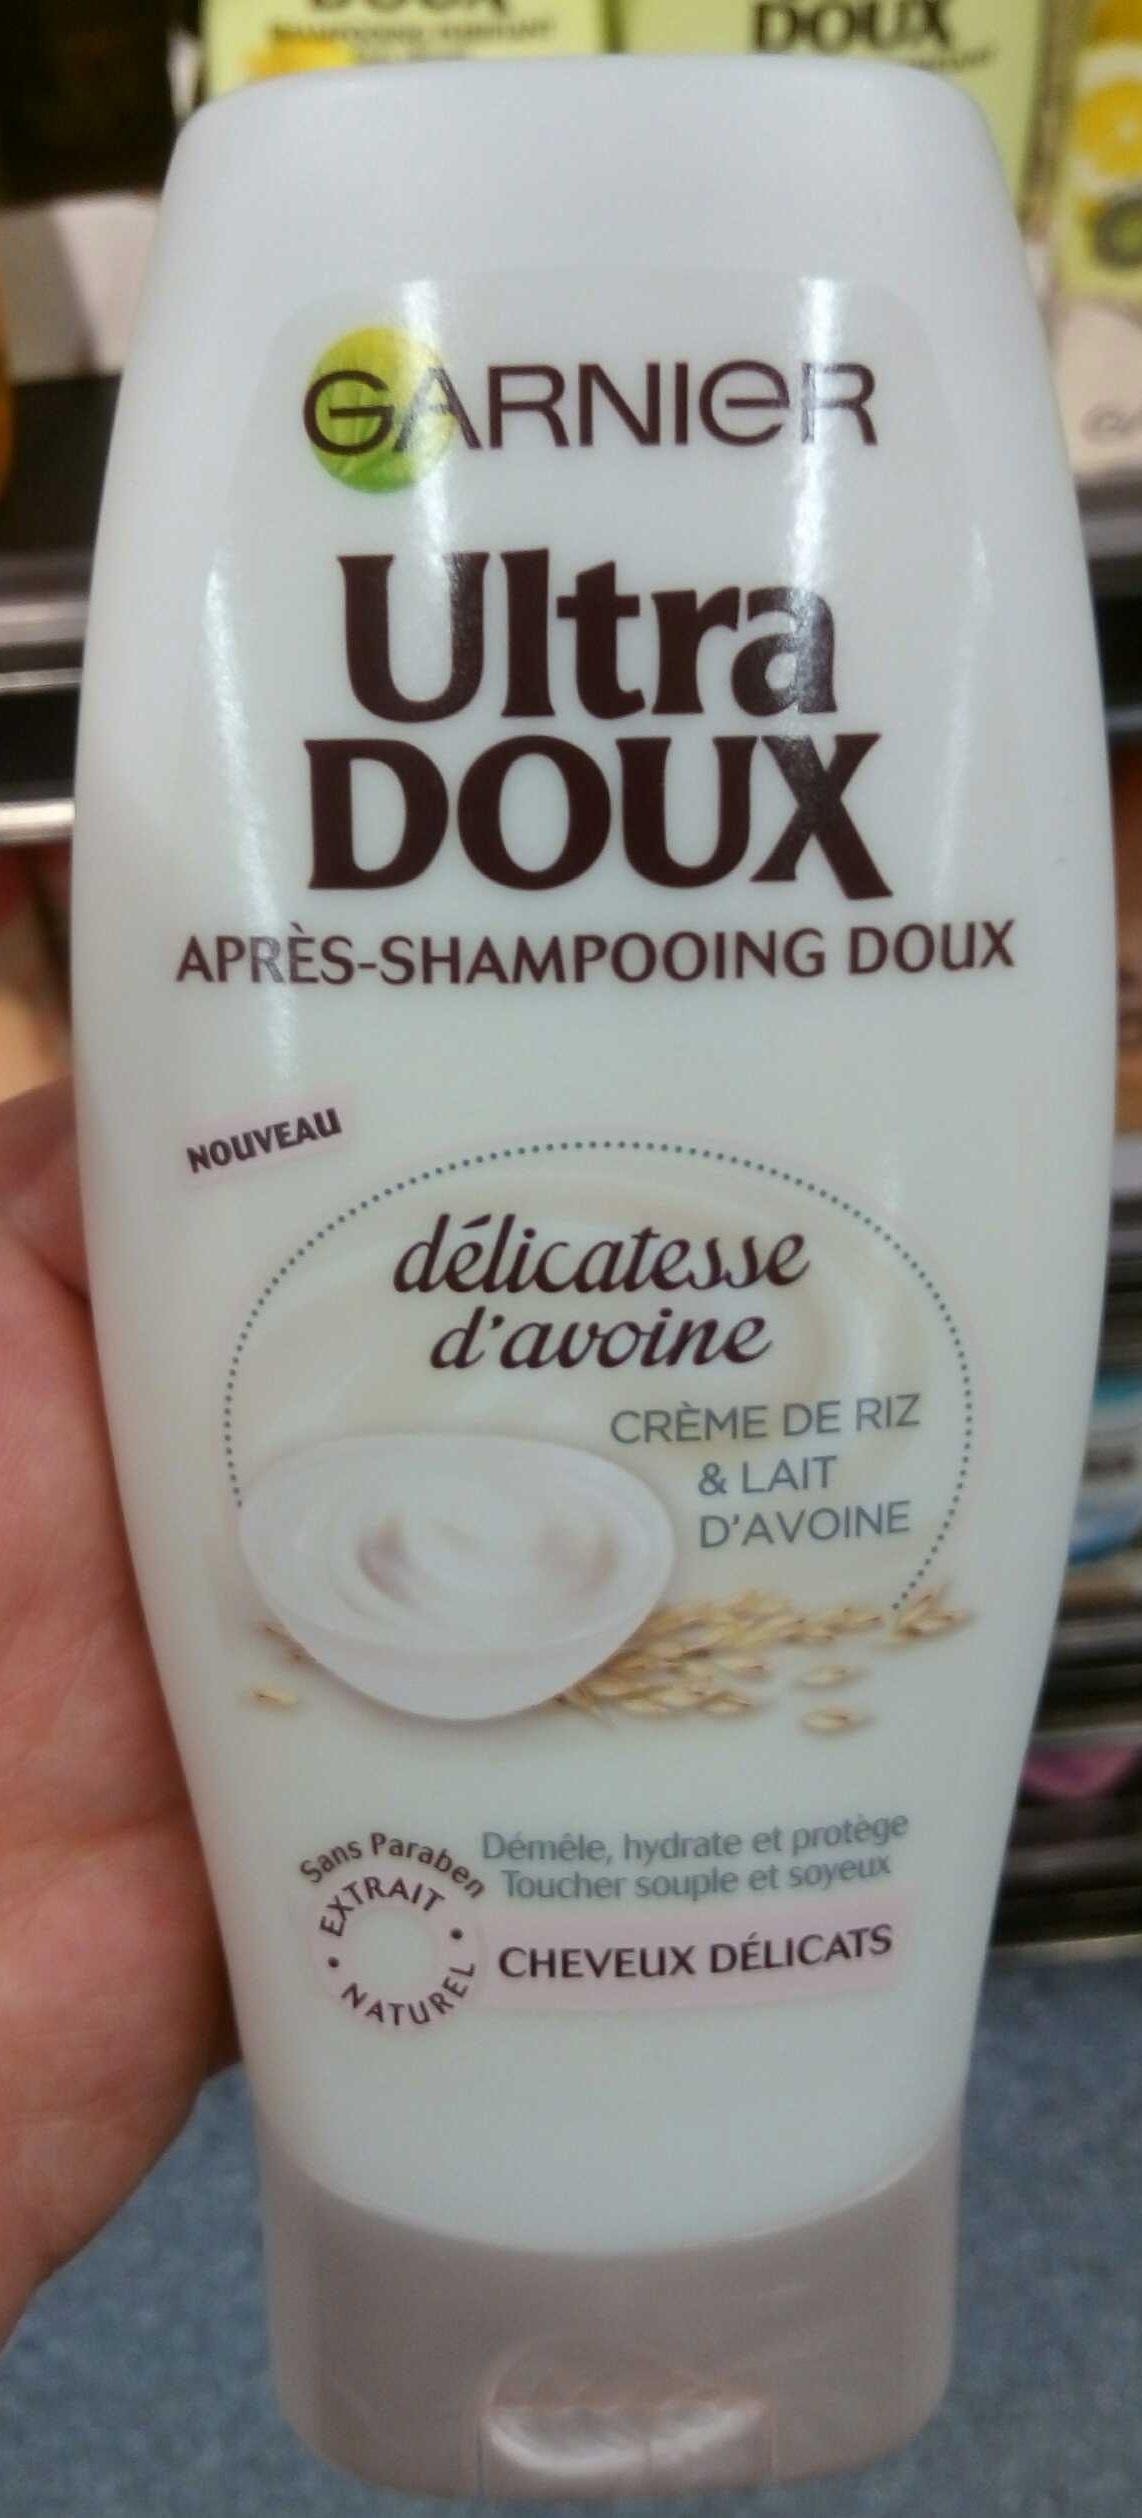 Ultra Doux Après-shampooing doux délicatesse d'avoine - Product - en